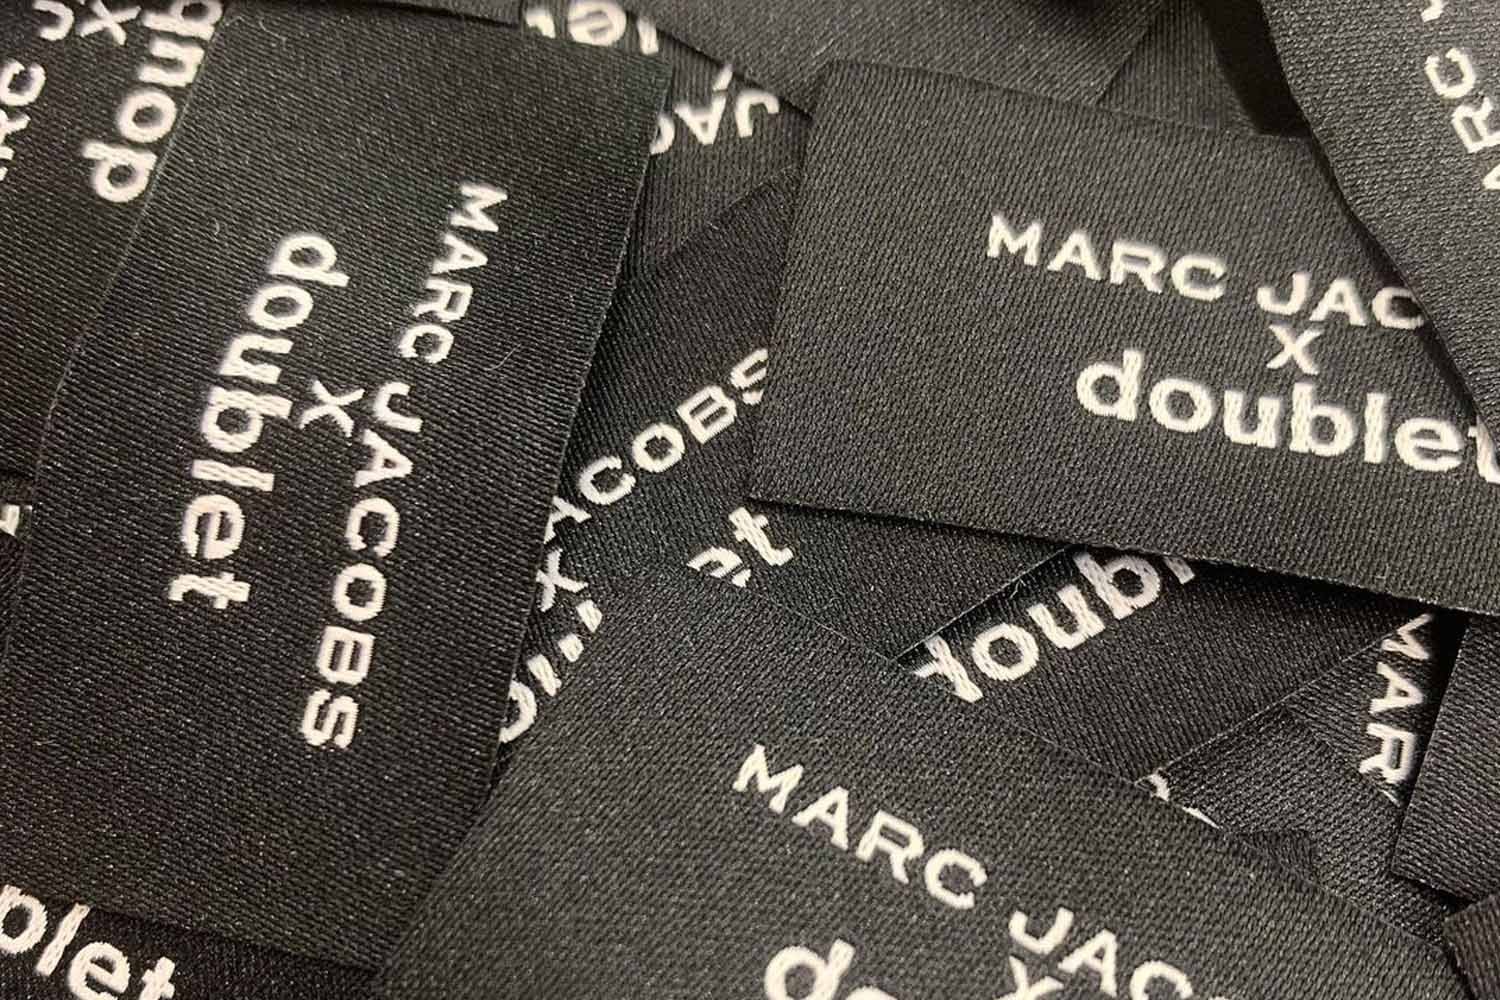 Marc Jacobs x doublet 最新聯名系列即將登場